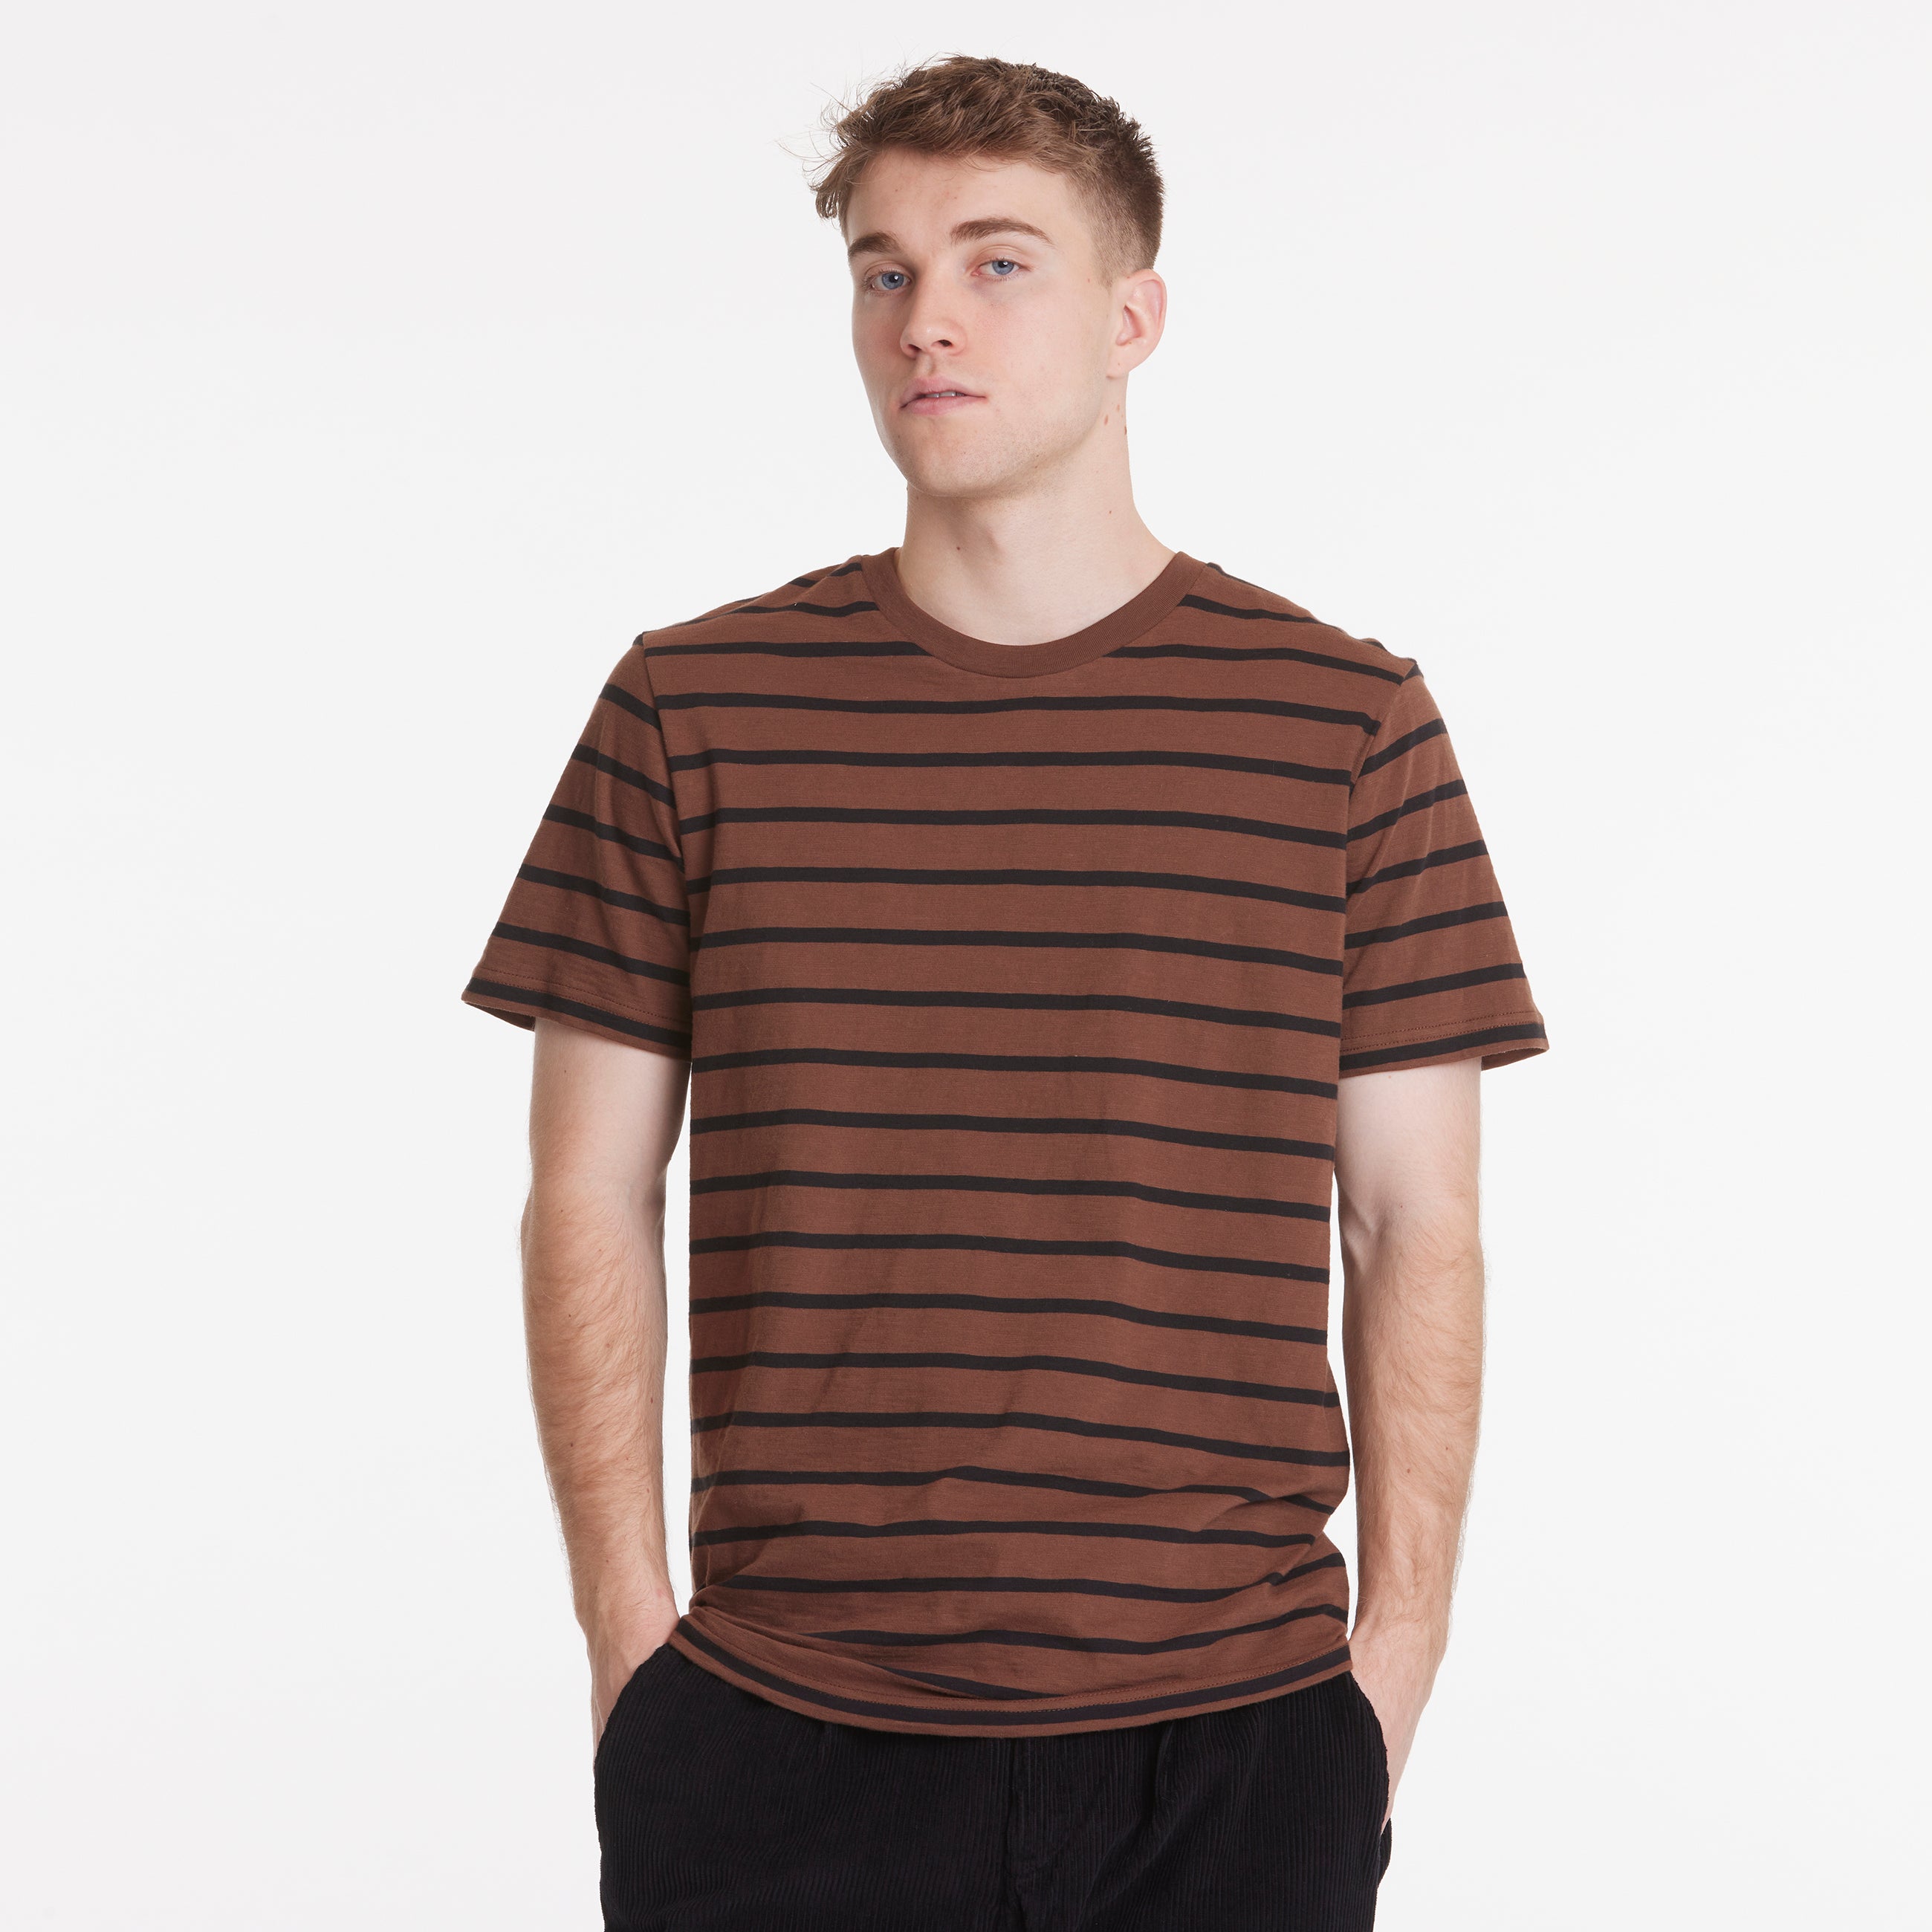 By Garment Makers Scott Striped Tee GOTS T-shirt SS 1258 Beaver